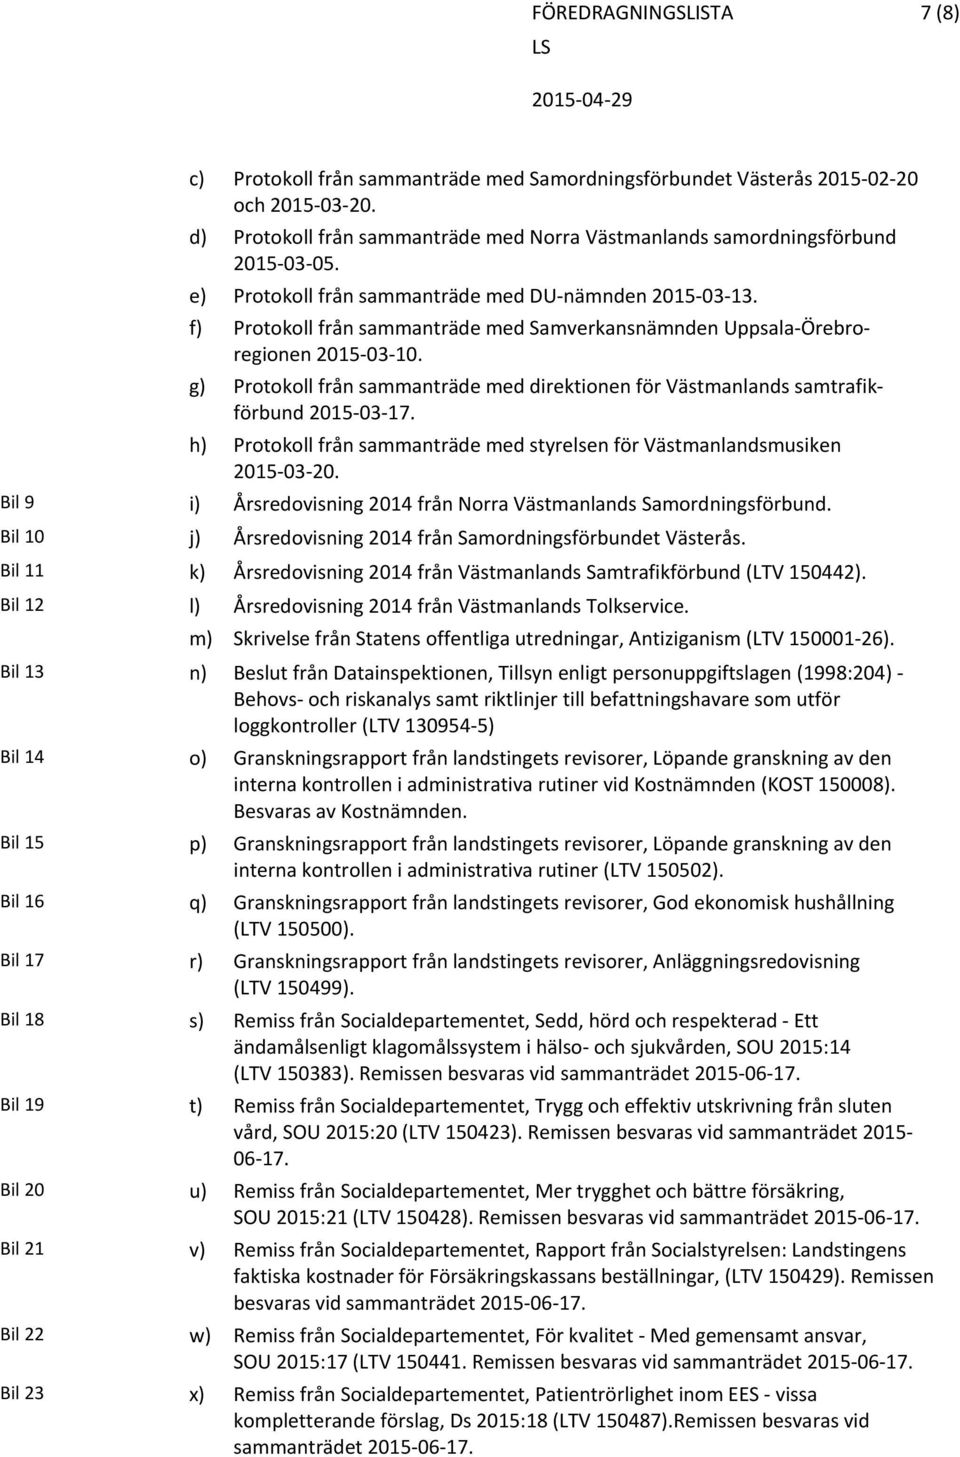 g) Protokoll från sammanträde med direktionen för Västmanlands samtrafikförbund 2015 03 17. h) Protokoll från sammanträde med styrelsen för Västmanlandsmusiken 2015 03 20.